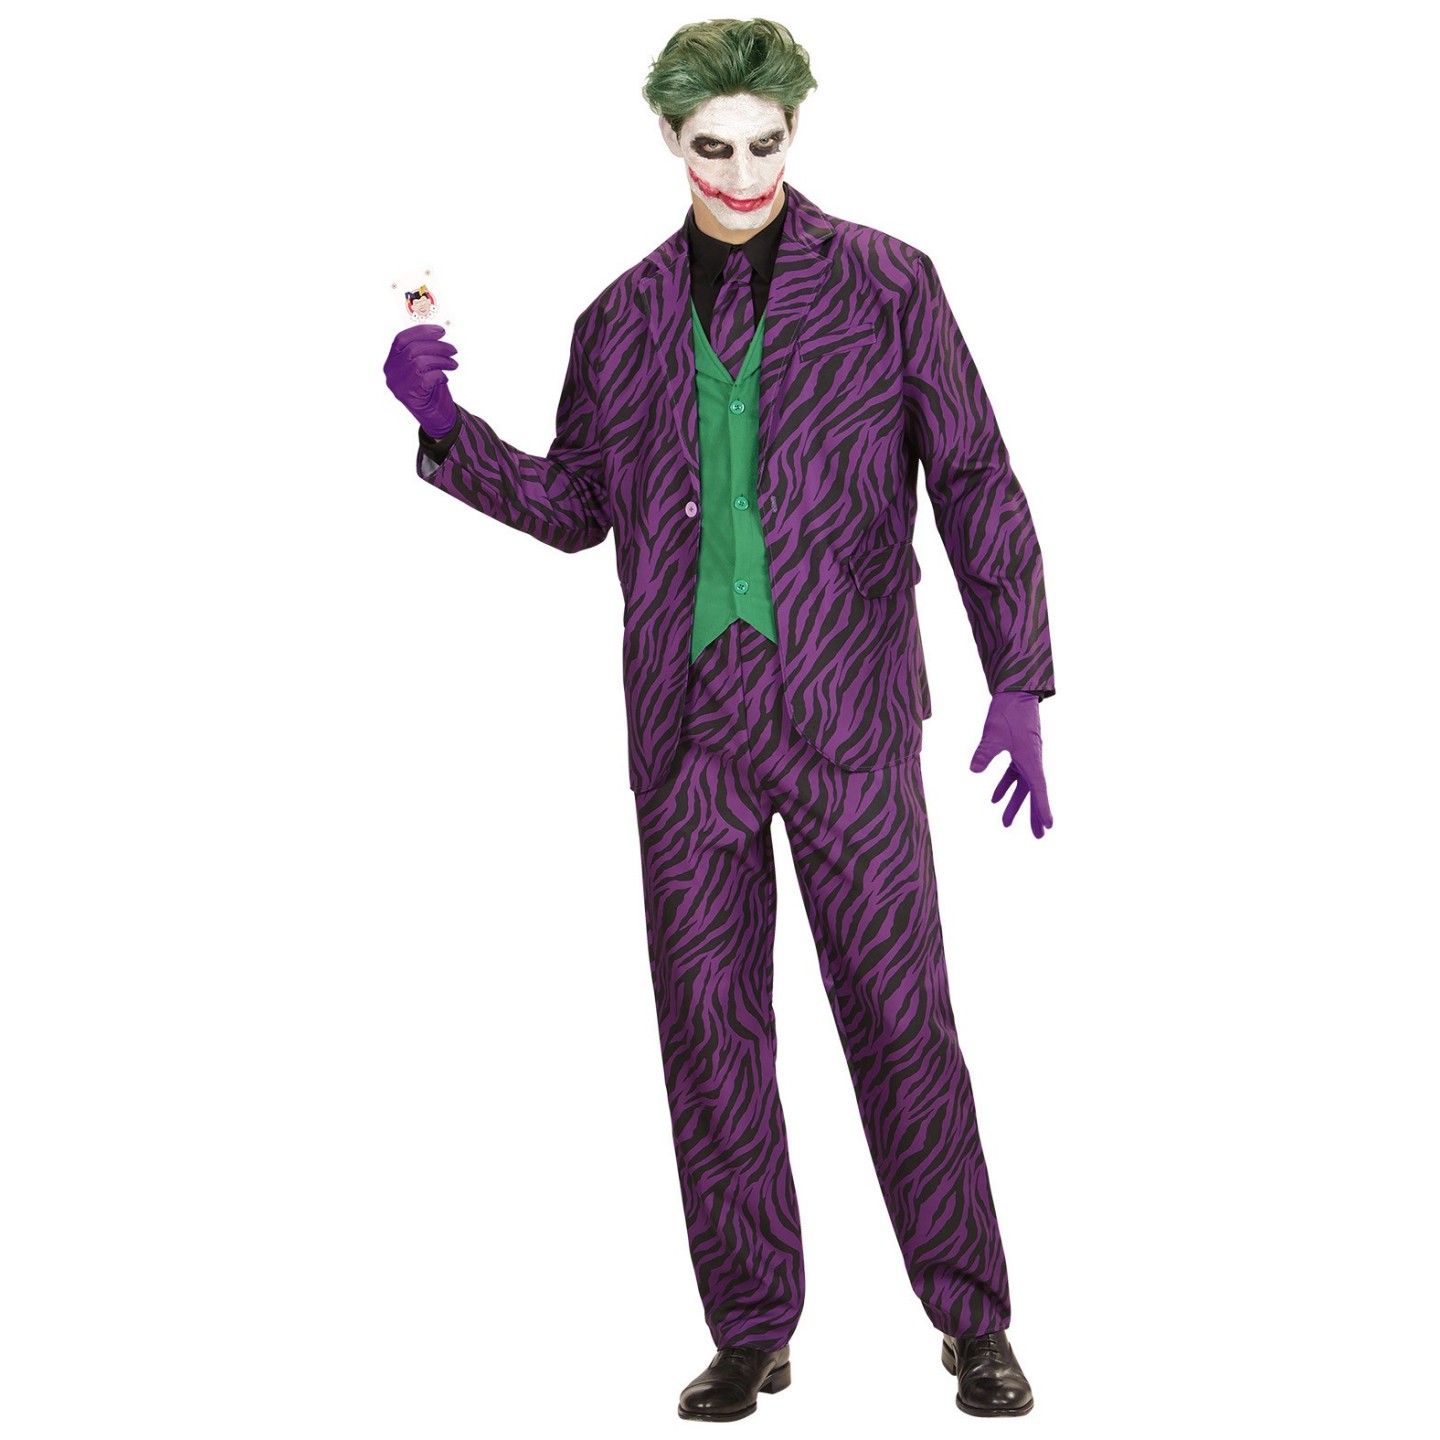 The kostuum kopen | Jokershop.be - Verkleedkleding